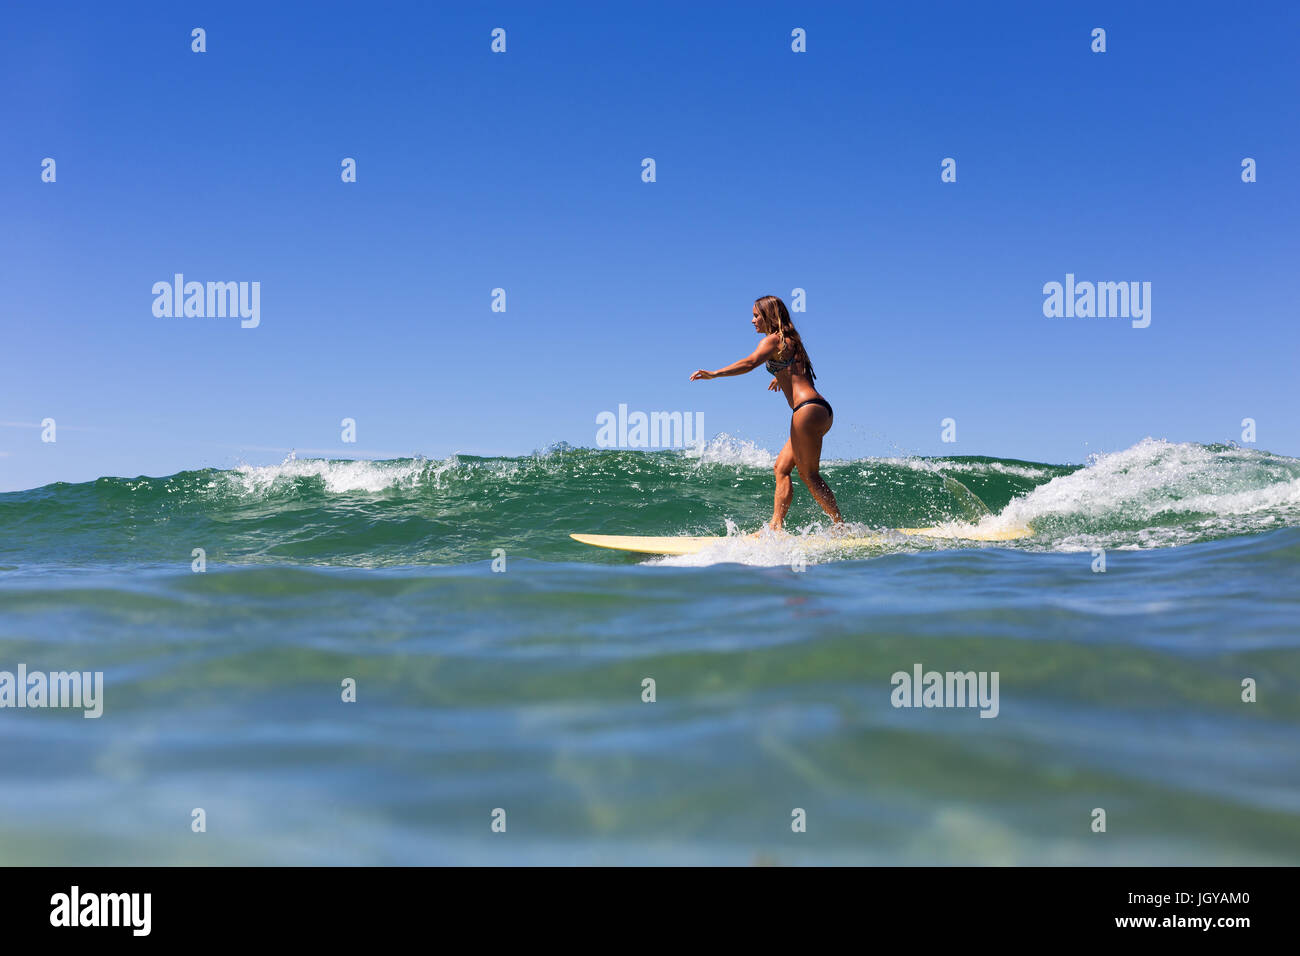 Une jeune fille bronzée, en bonne santé au cours de l'eau claire pristine surfe en été en Australie. Banque D'Images